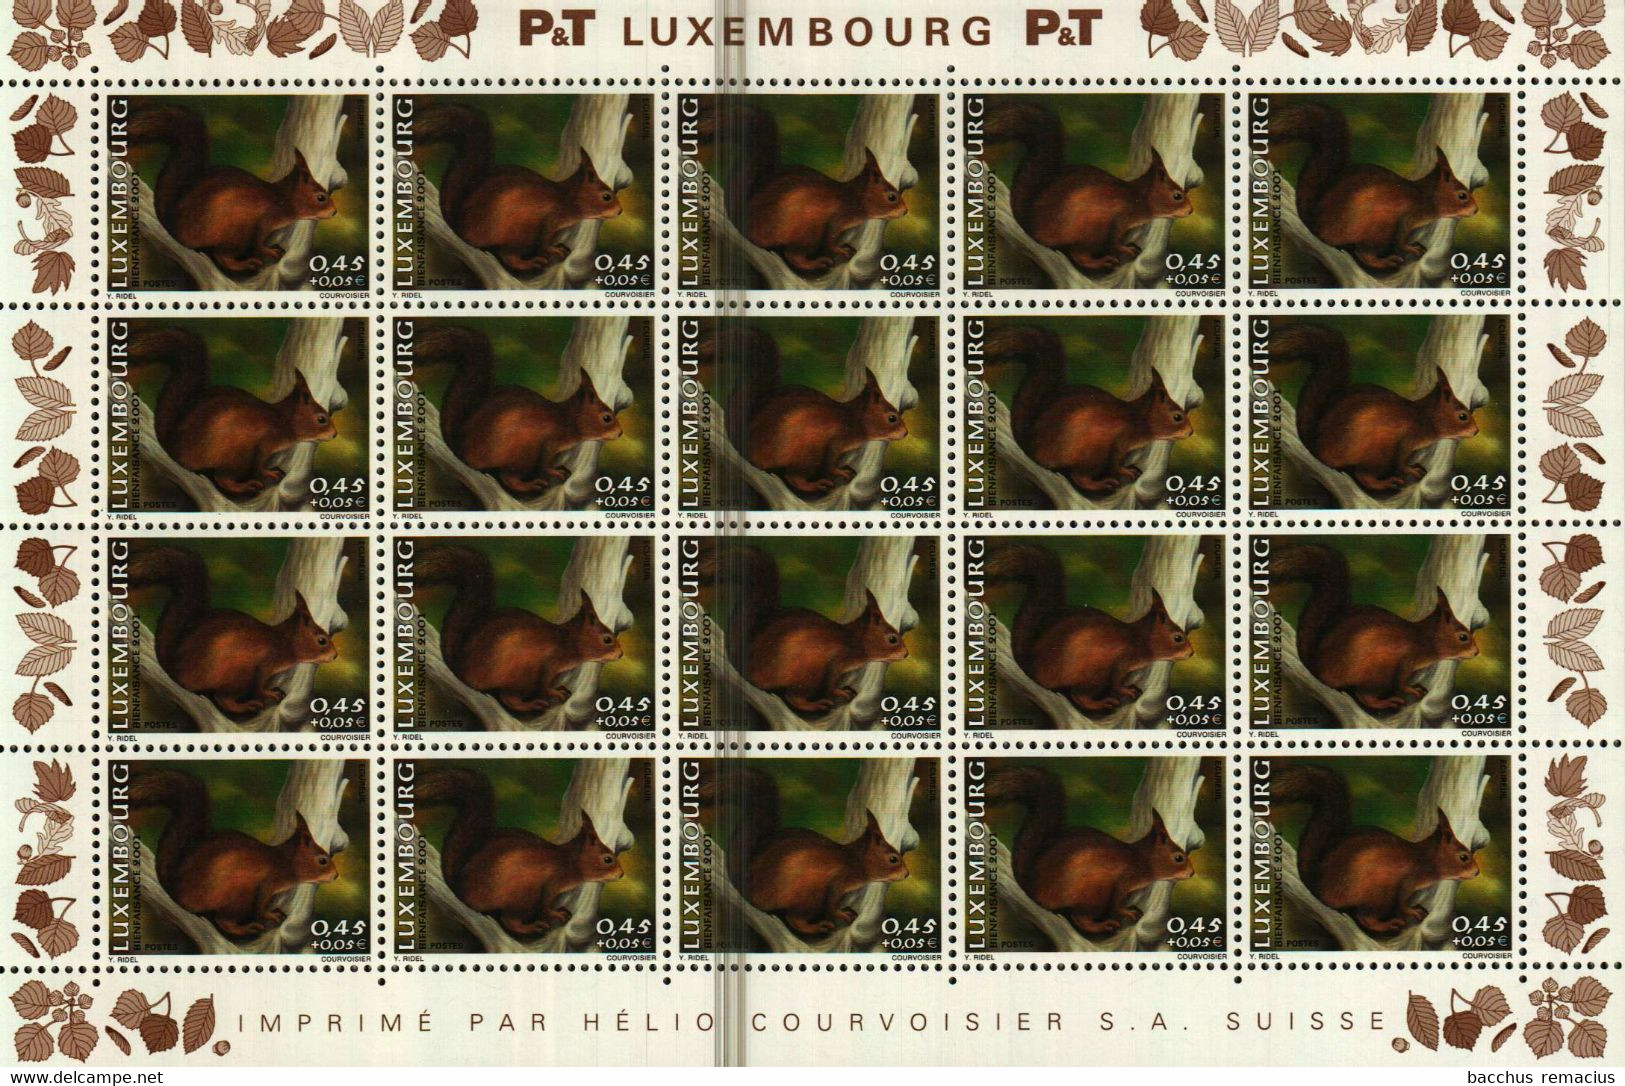 Luxembourg Feuille à 20 Timbres à 0,45+0.05 Euro Ecureuil/Eichhörnchen/Squirrel Timbre De Bienfaisance 2001 - Hojas Completas